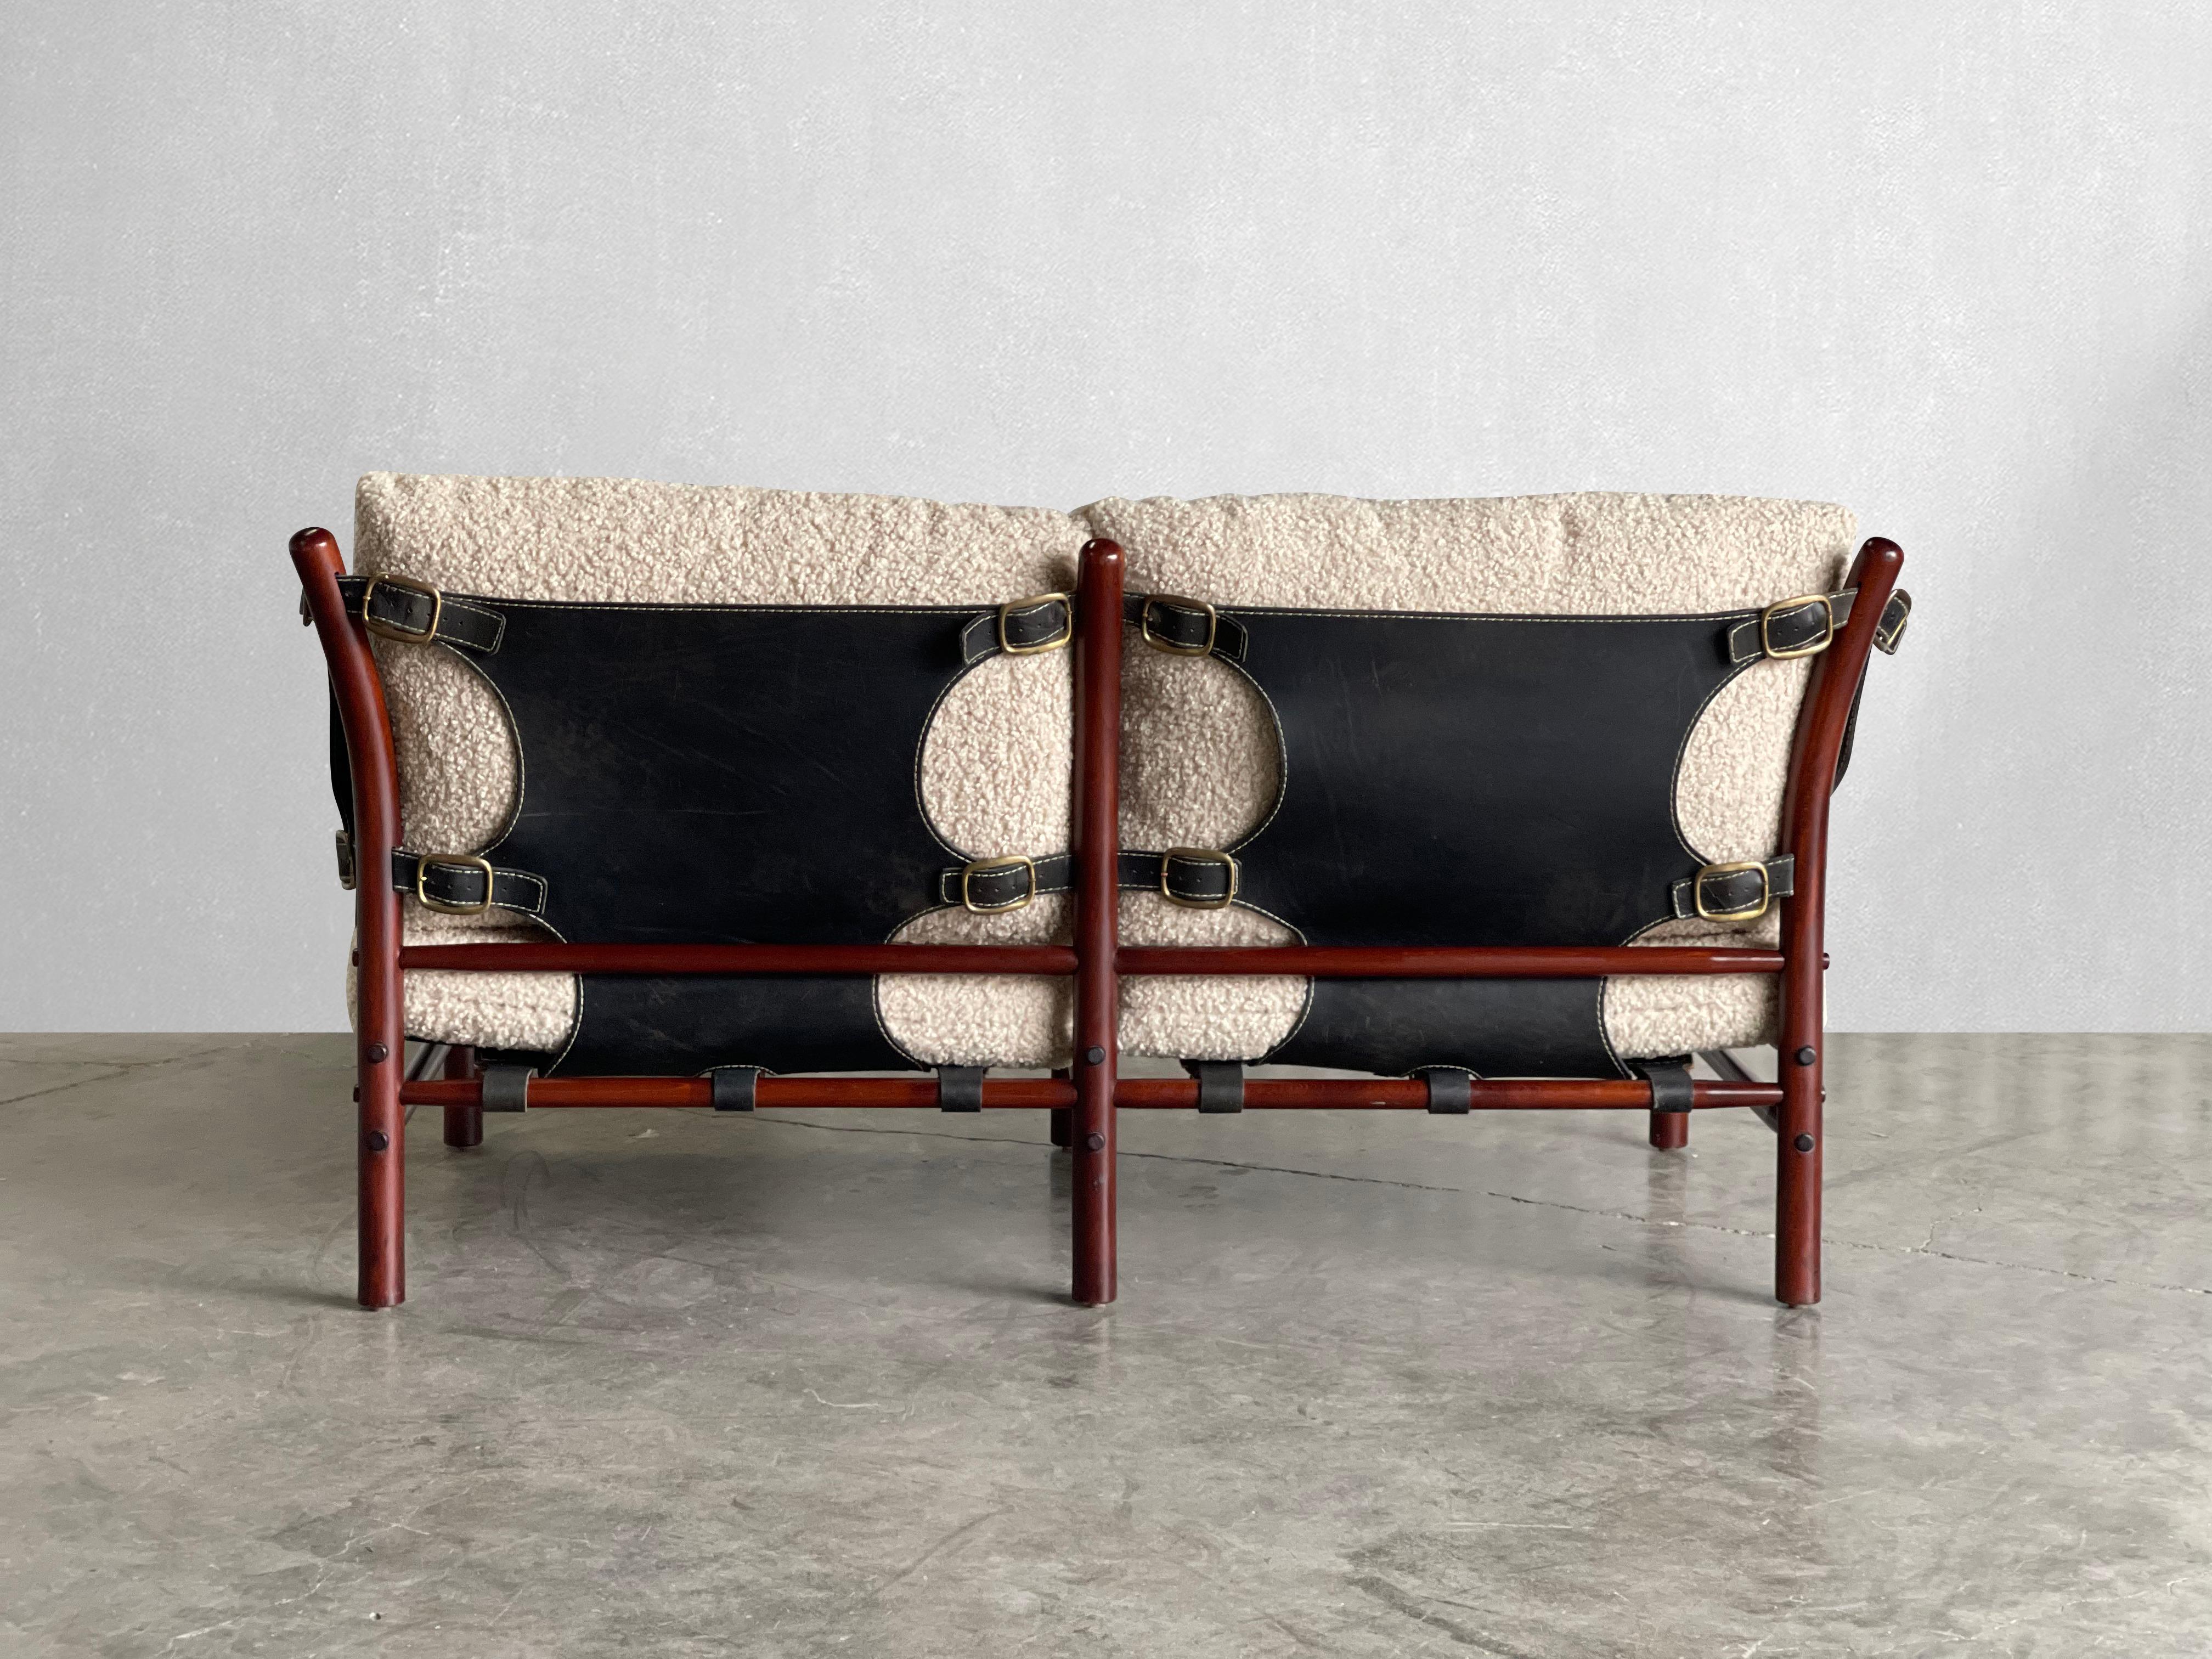 C. 1960s

Produit par Arne Norells AB en Suède. Ce canapé est l'incarnation du confort. Il a été retapissé dans un sherpa végétal de couleur pierre de la plus haute qualité. Le cadre est composé de bois courbé teinté, de cuir et de laiton. 

Les